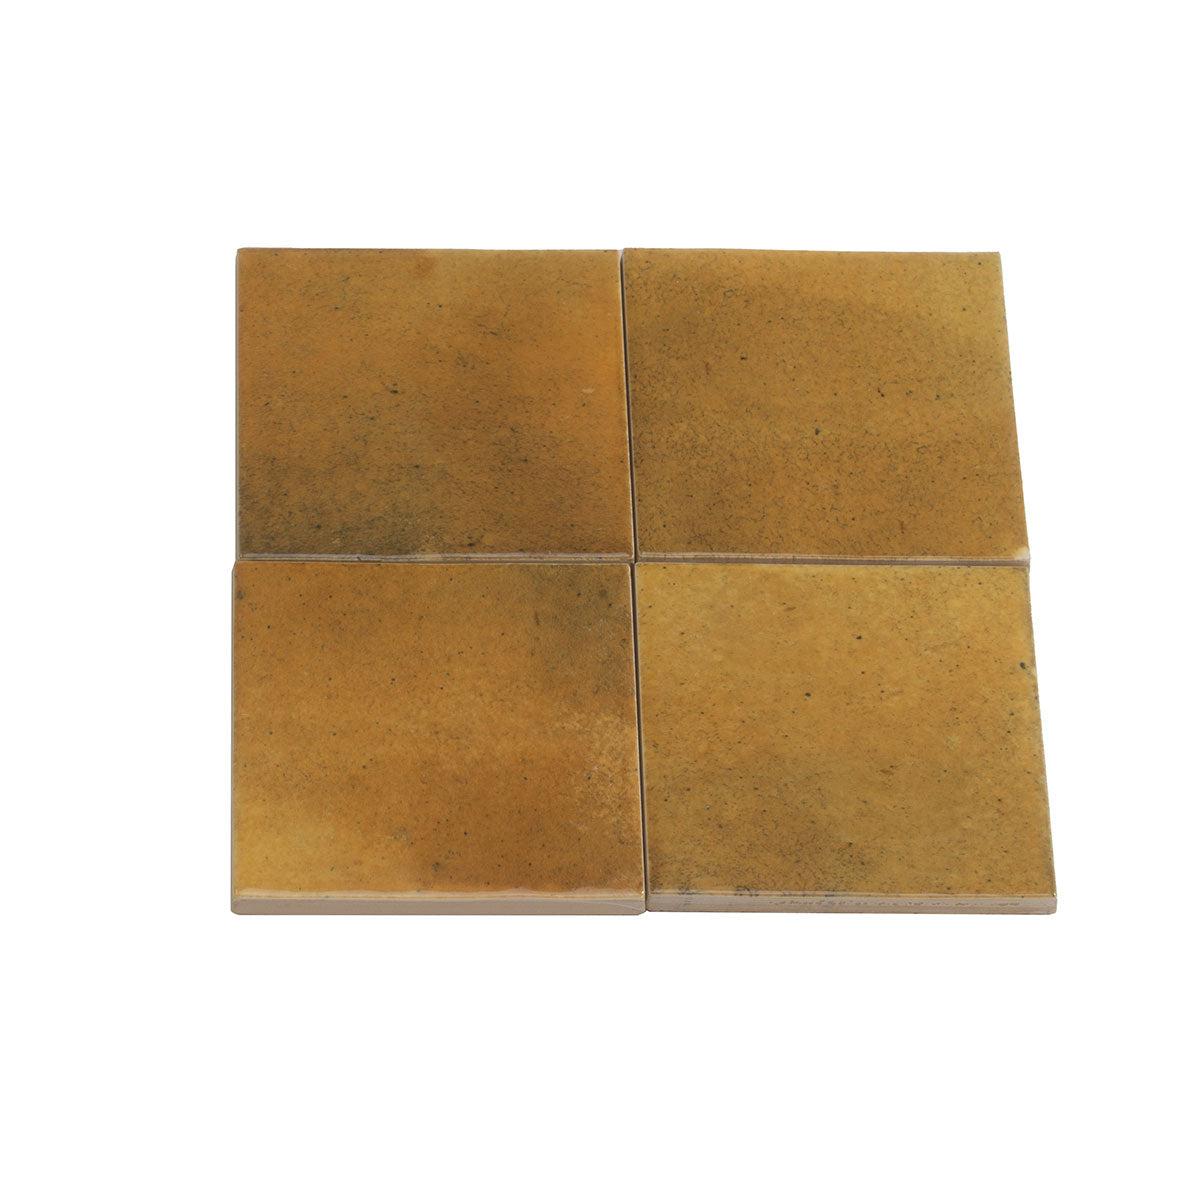 Luna Caramel 4x4 Ceramic Square Tiles